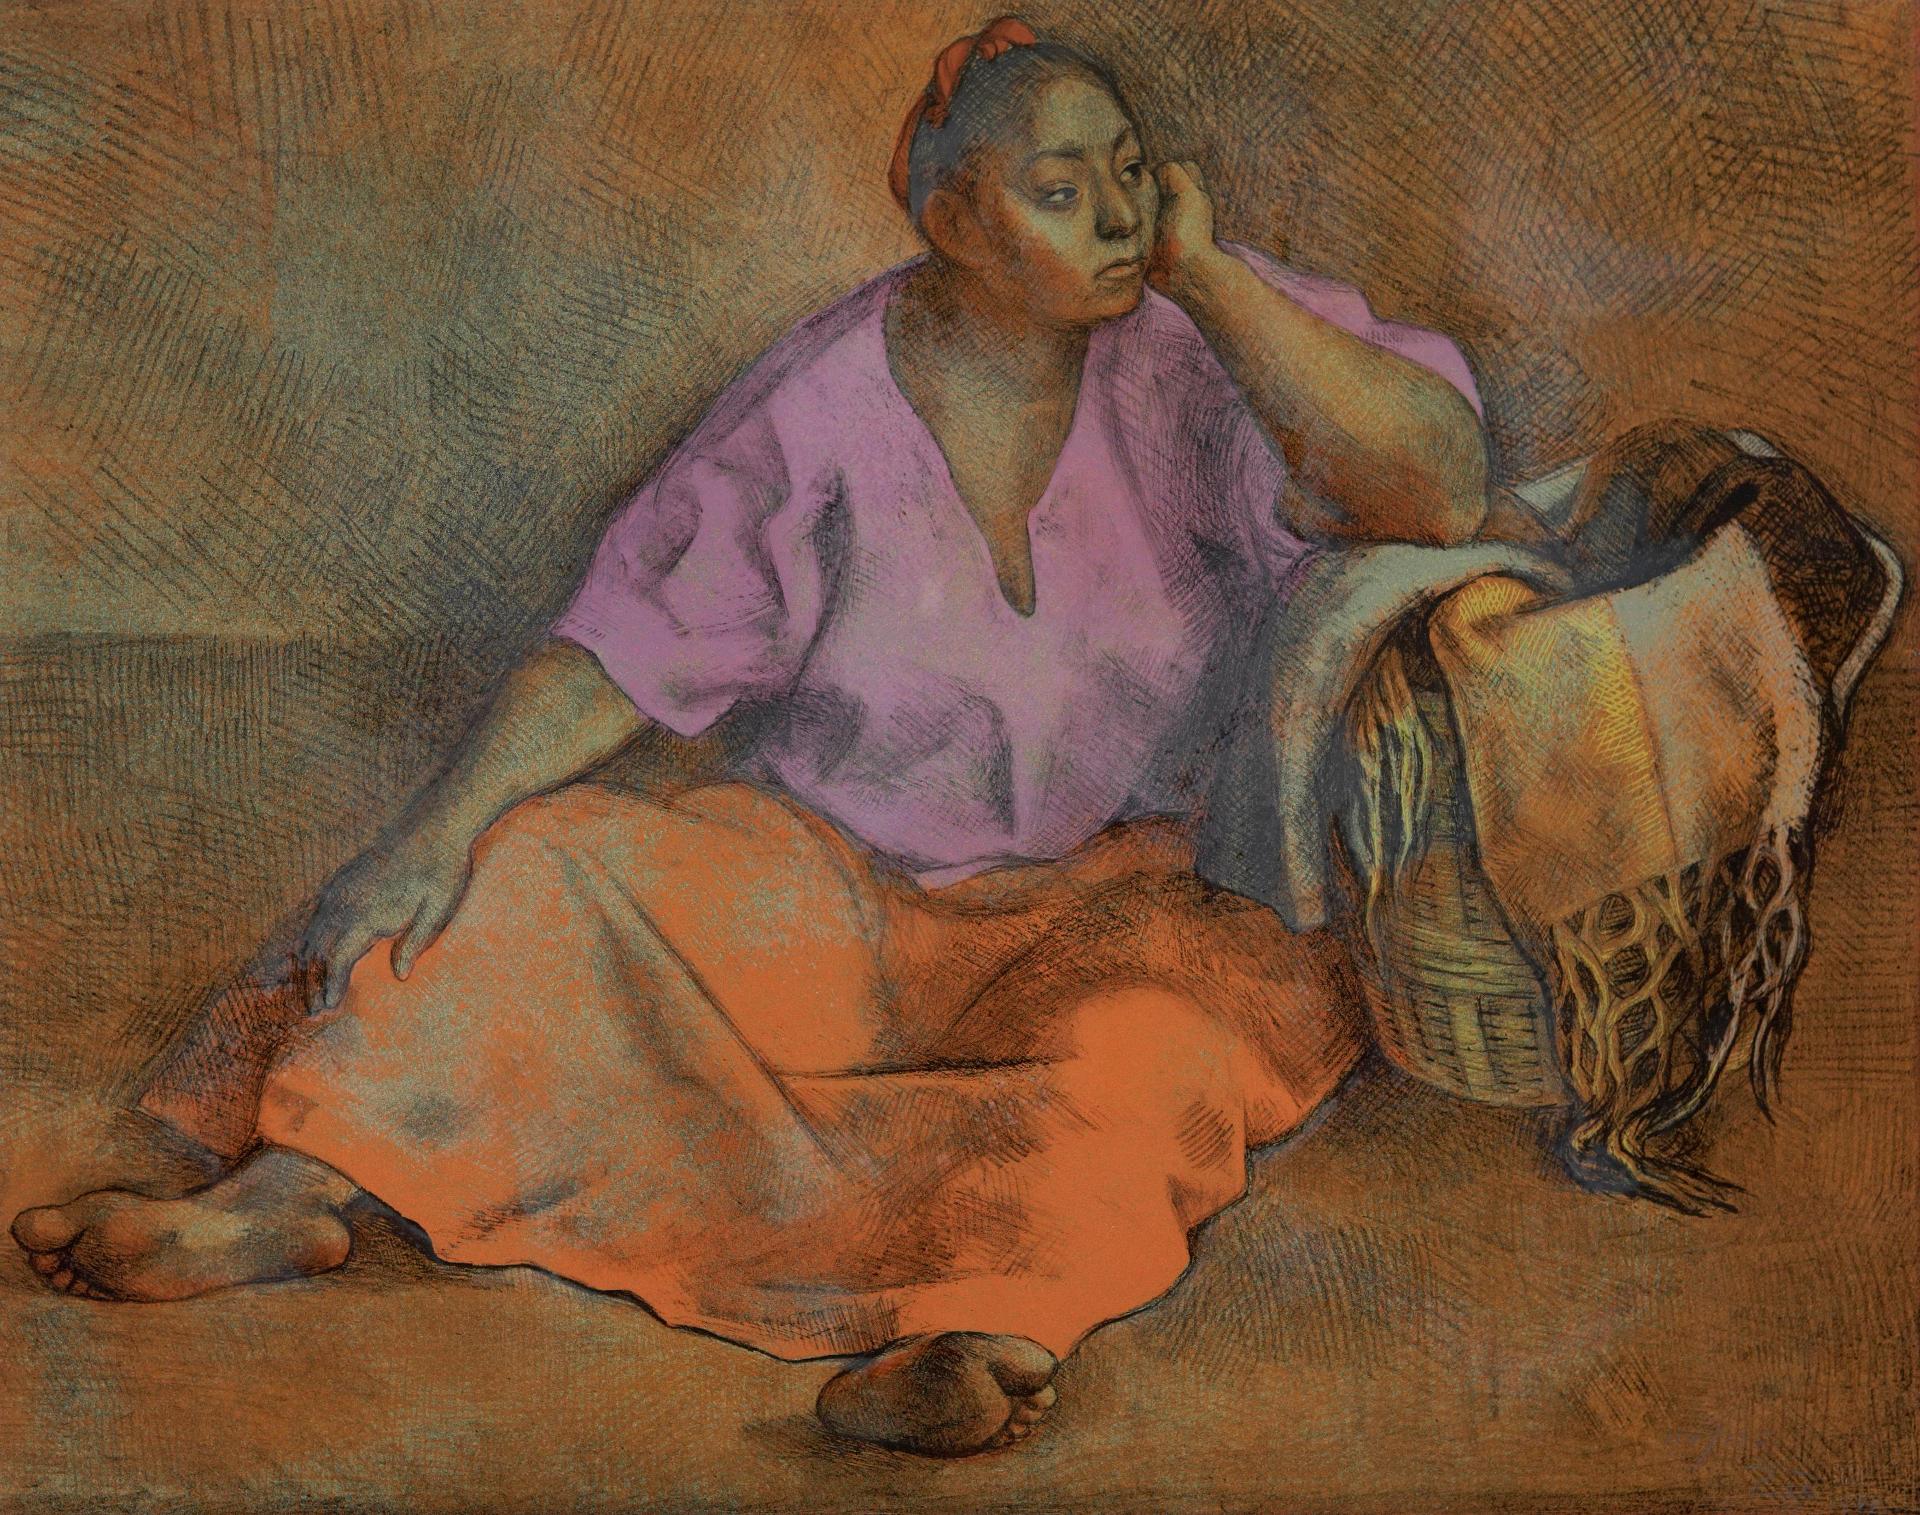 Francisco Zúñiga (1912-1998) - Woman with Basket